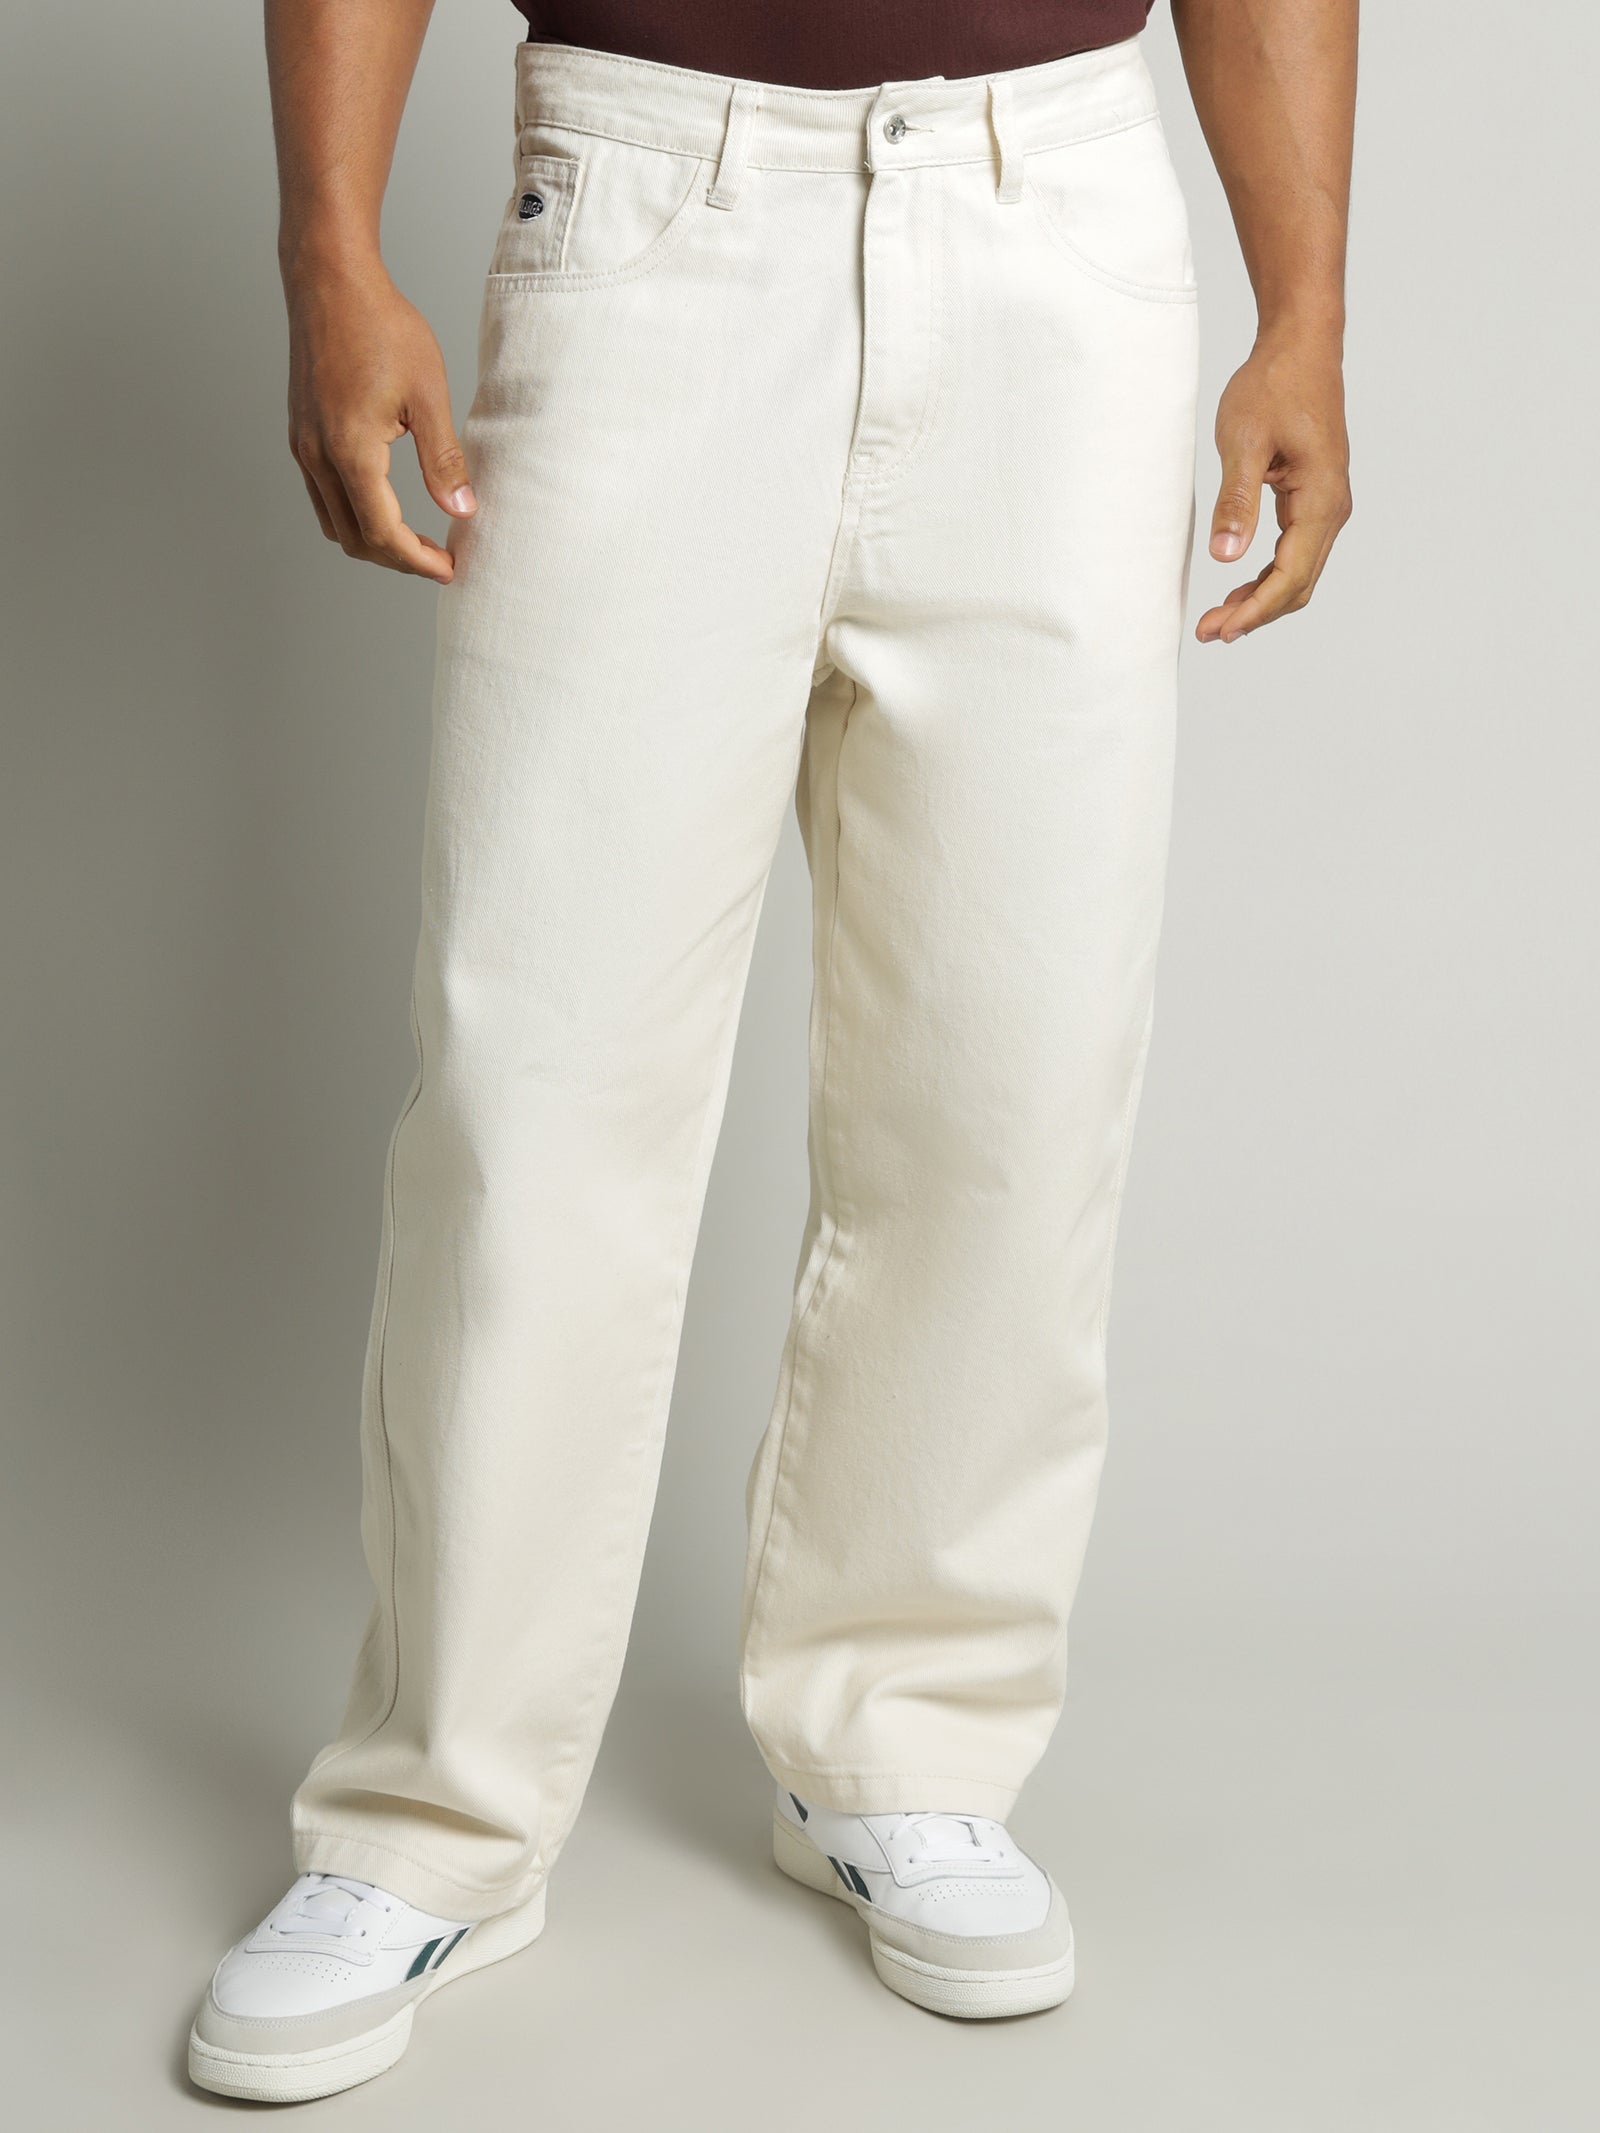 Bumbum Bum Pants Combo + Original Bull Lycra Jeans Jacket